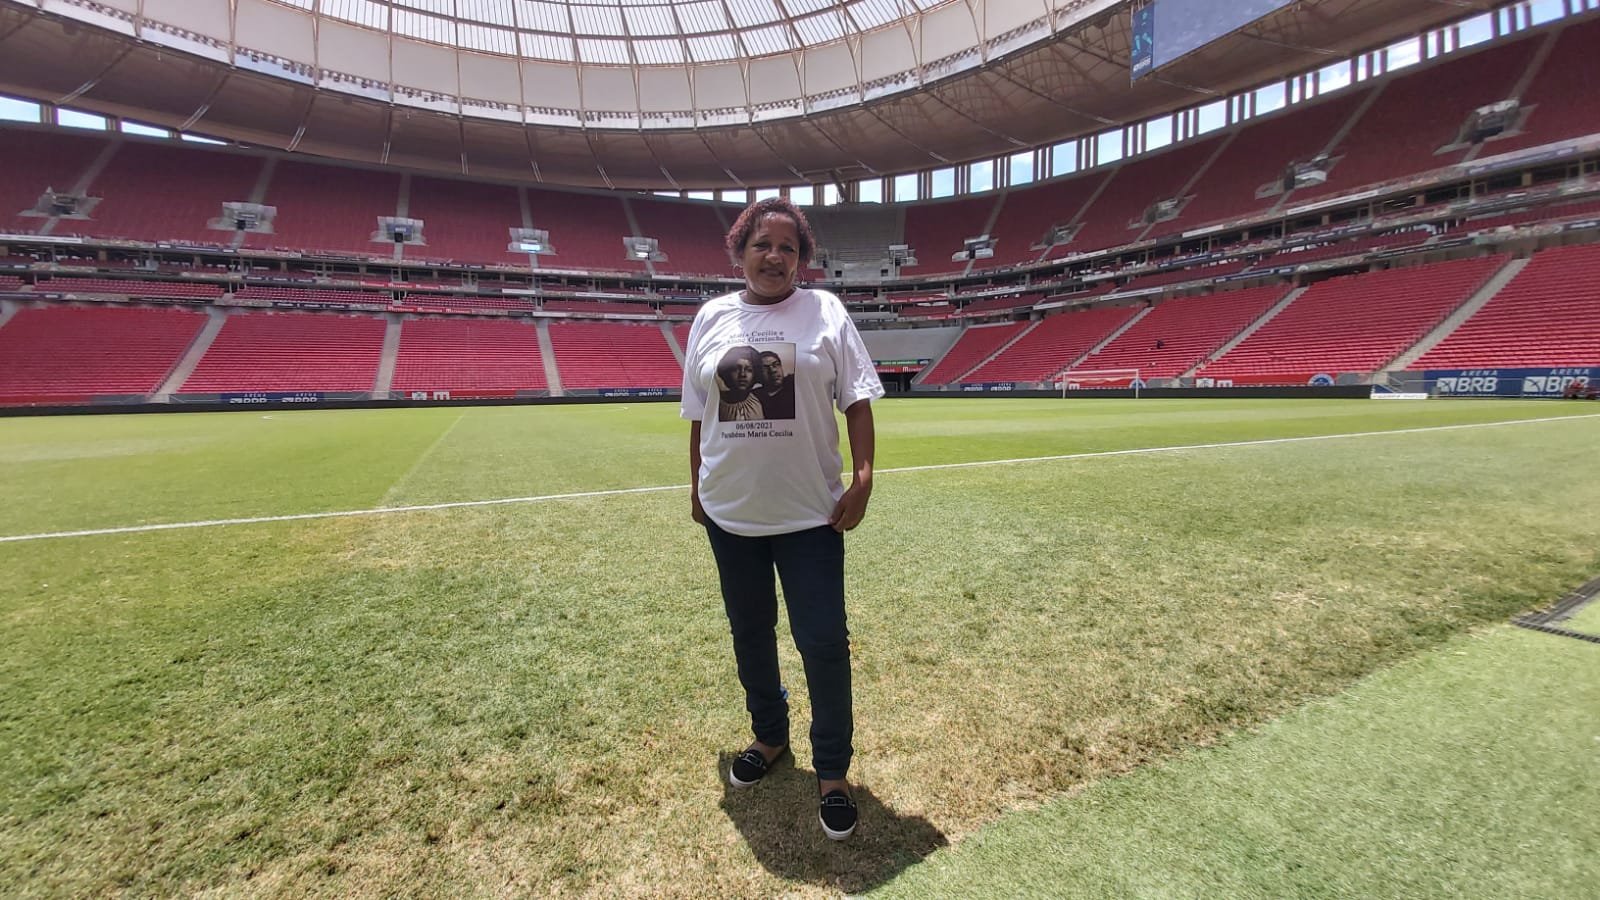 Filha de Garrincha vem a Brasília e conhece estádio que homenageia o pai